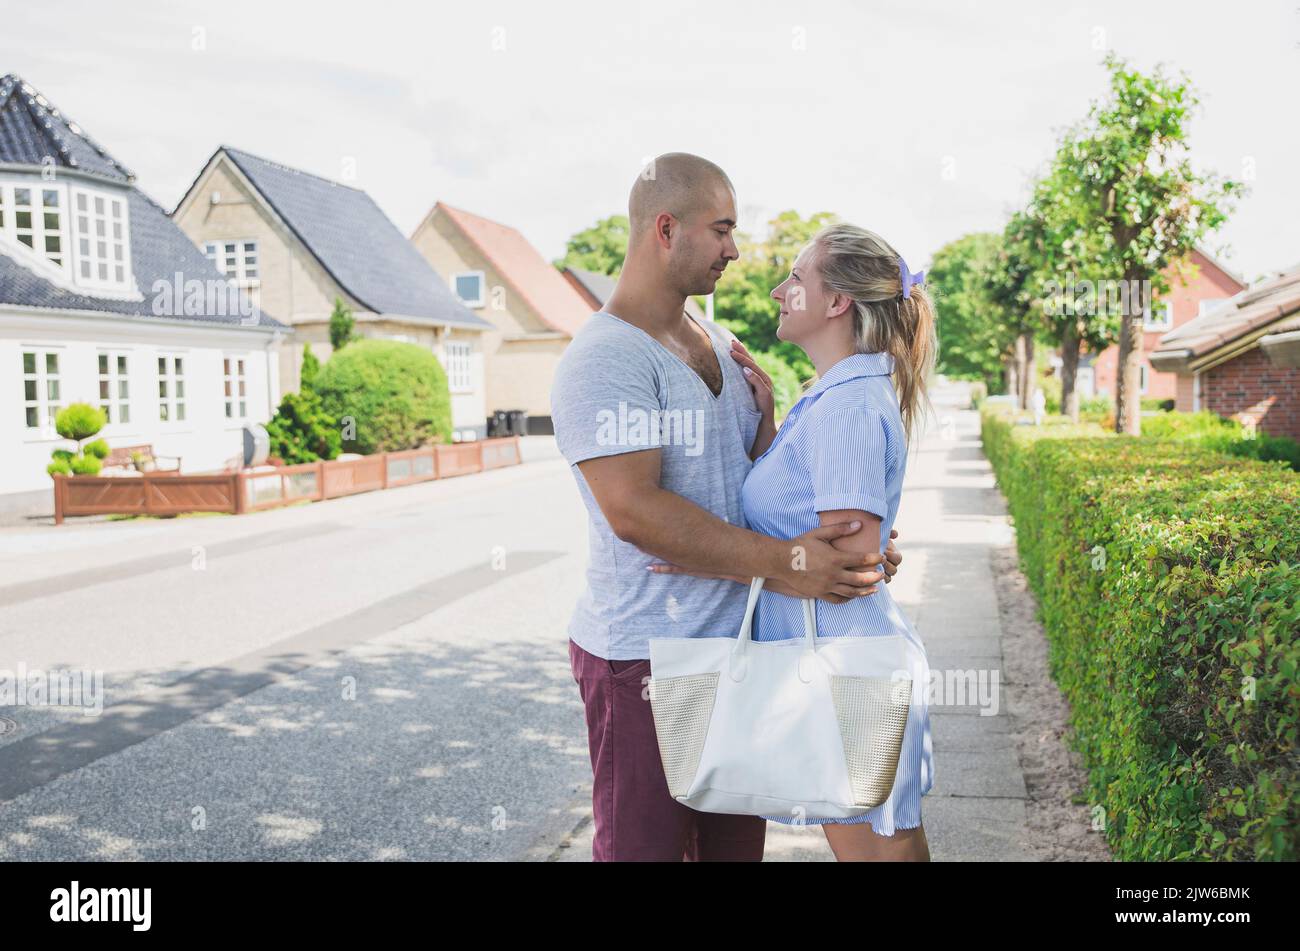 Das junge Ehepaar umarmt sich in einer schönen, gemütlichen Straße Stockfoto